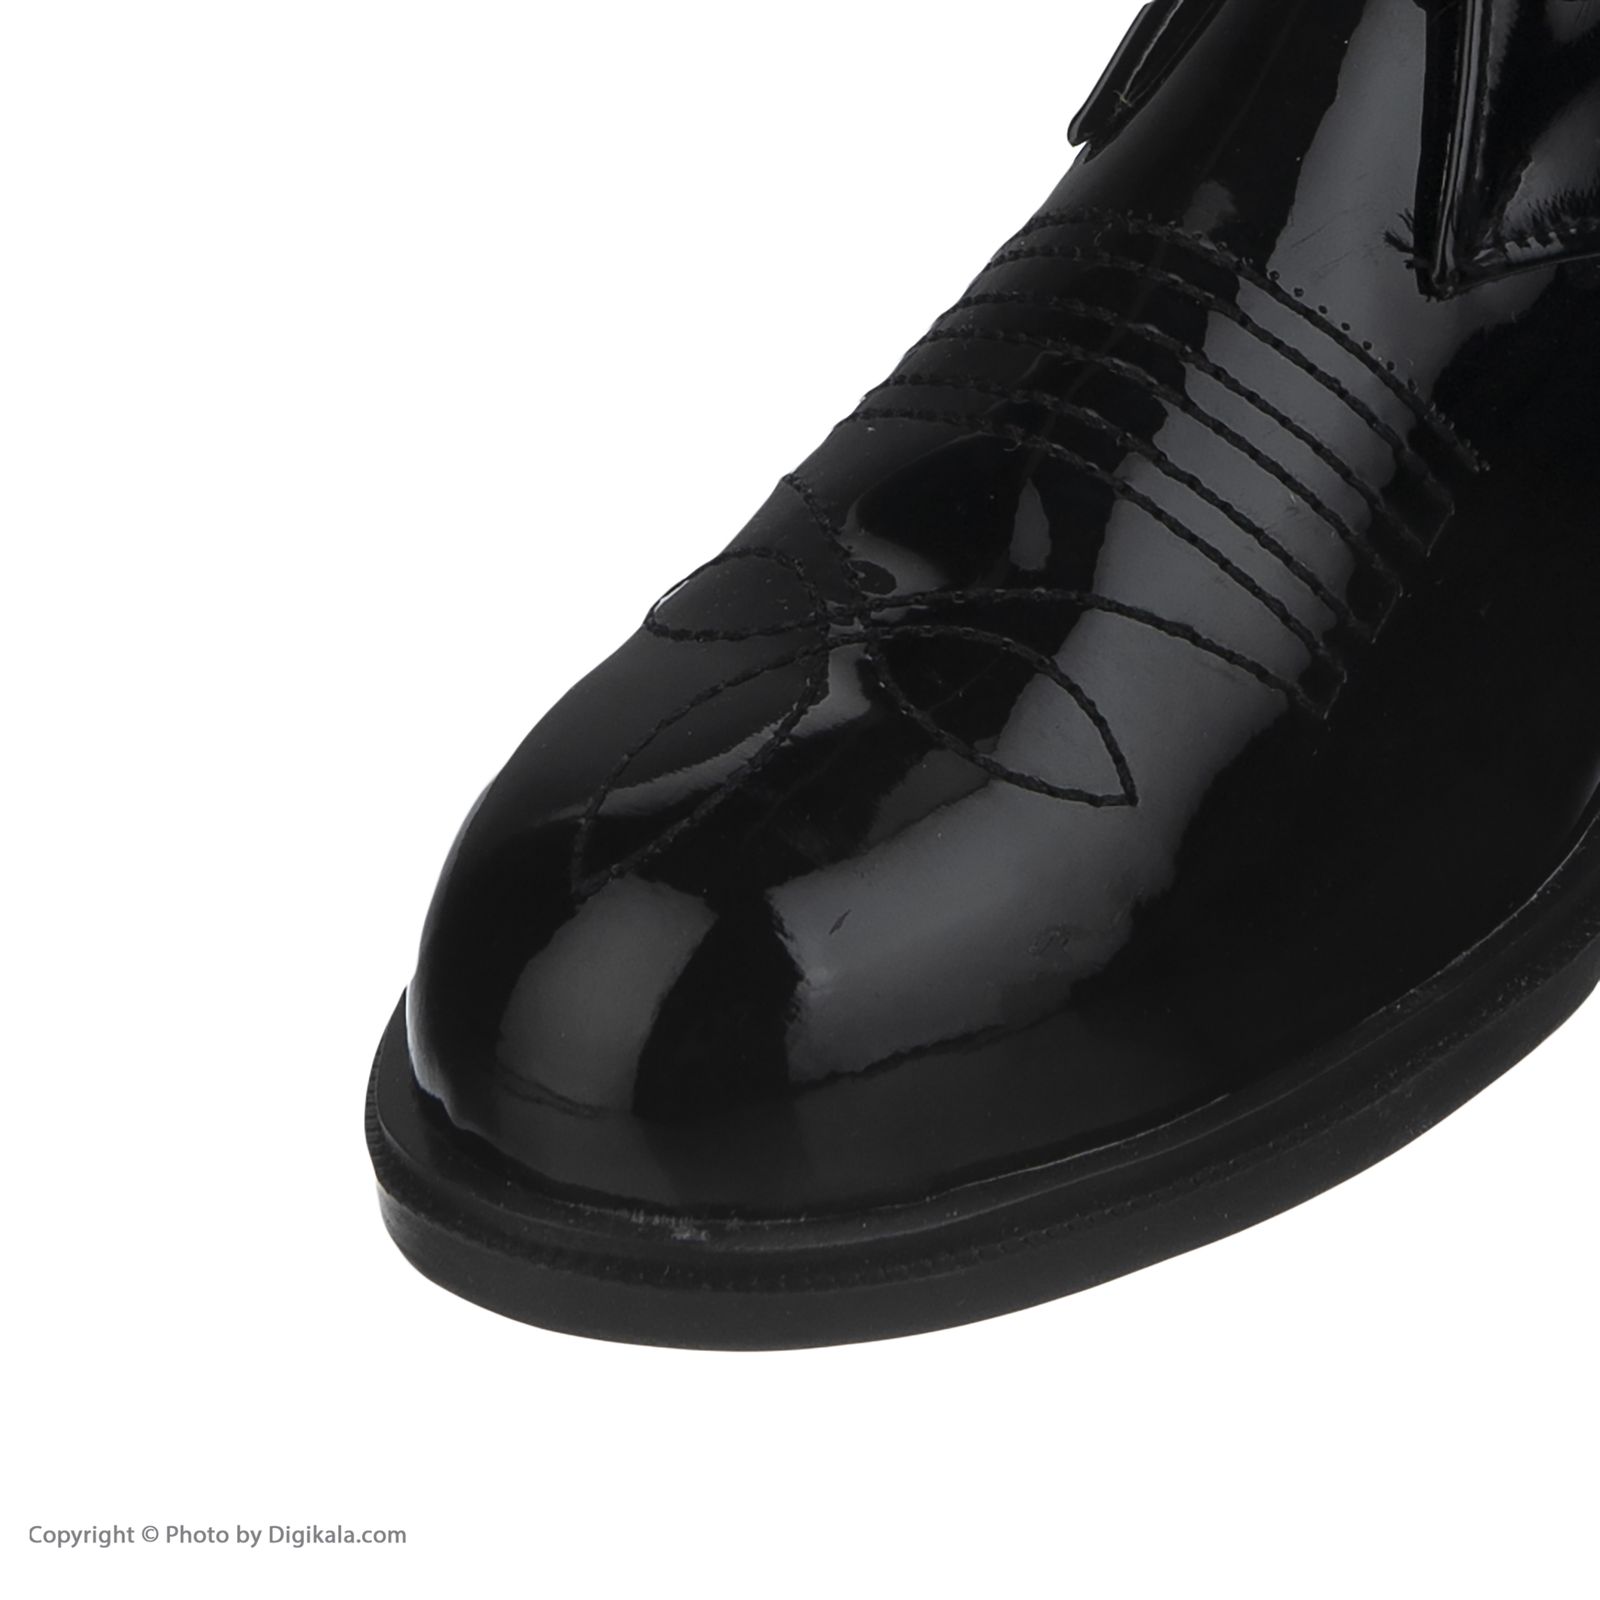  کفش مردانه لبتو مدل 1058-99 -  - 7